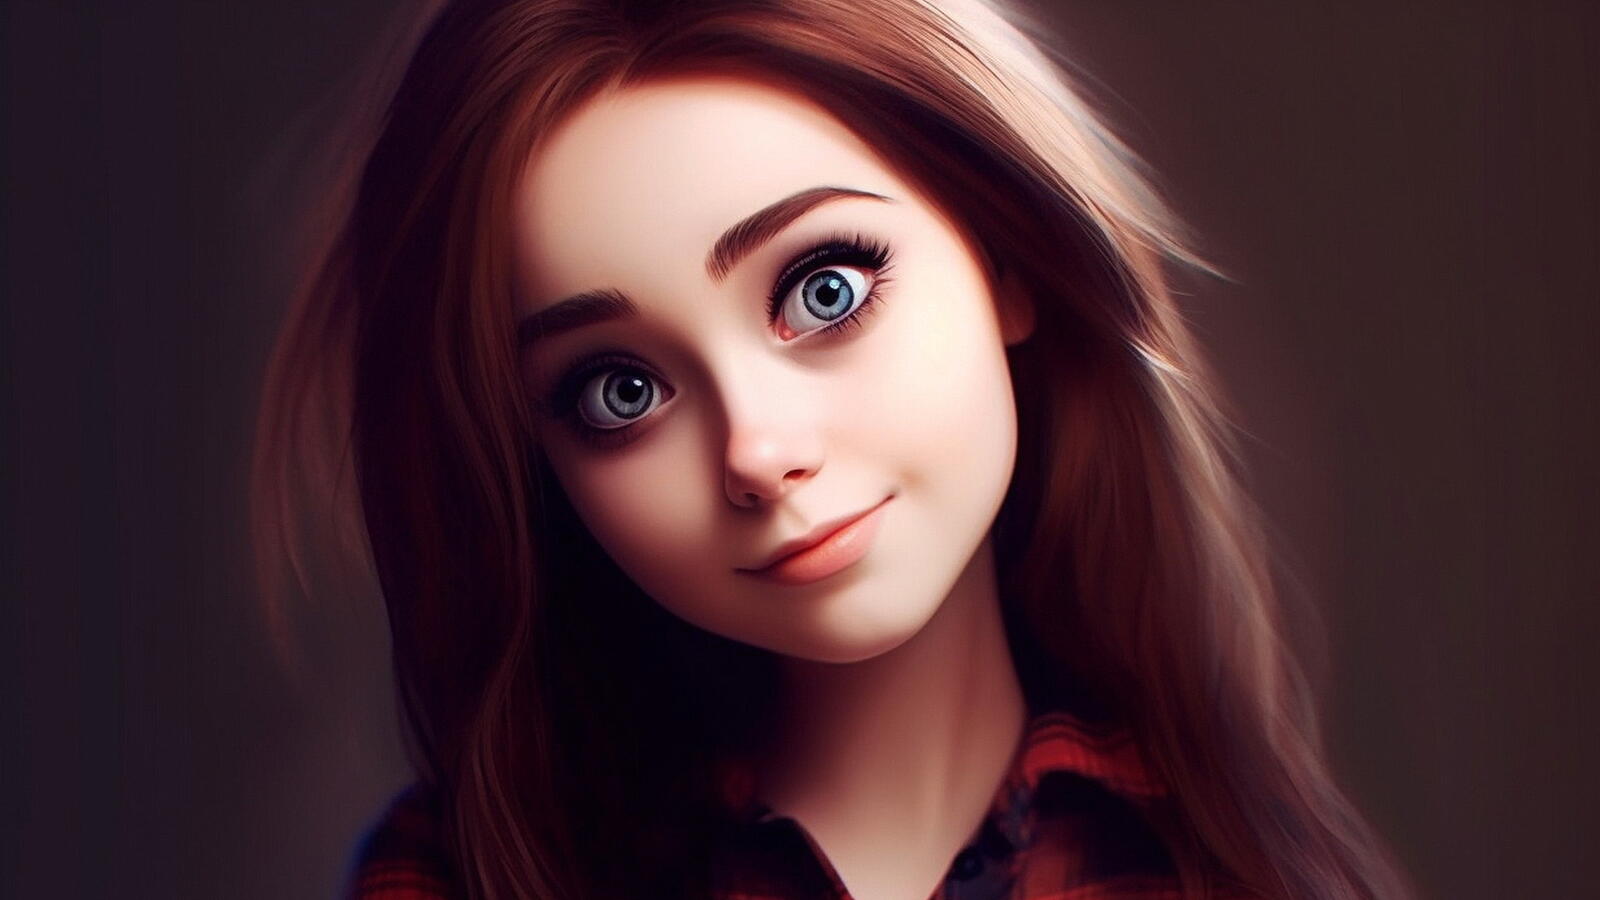 Бесплатное фото Портрет девушки шатенки с большими глазами на коричневом фоне